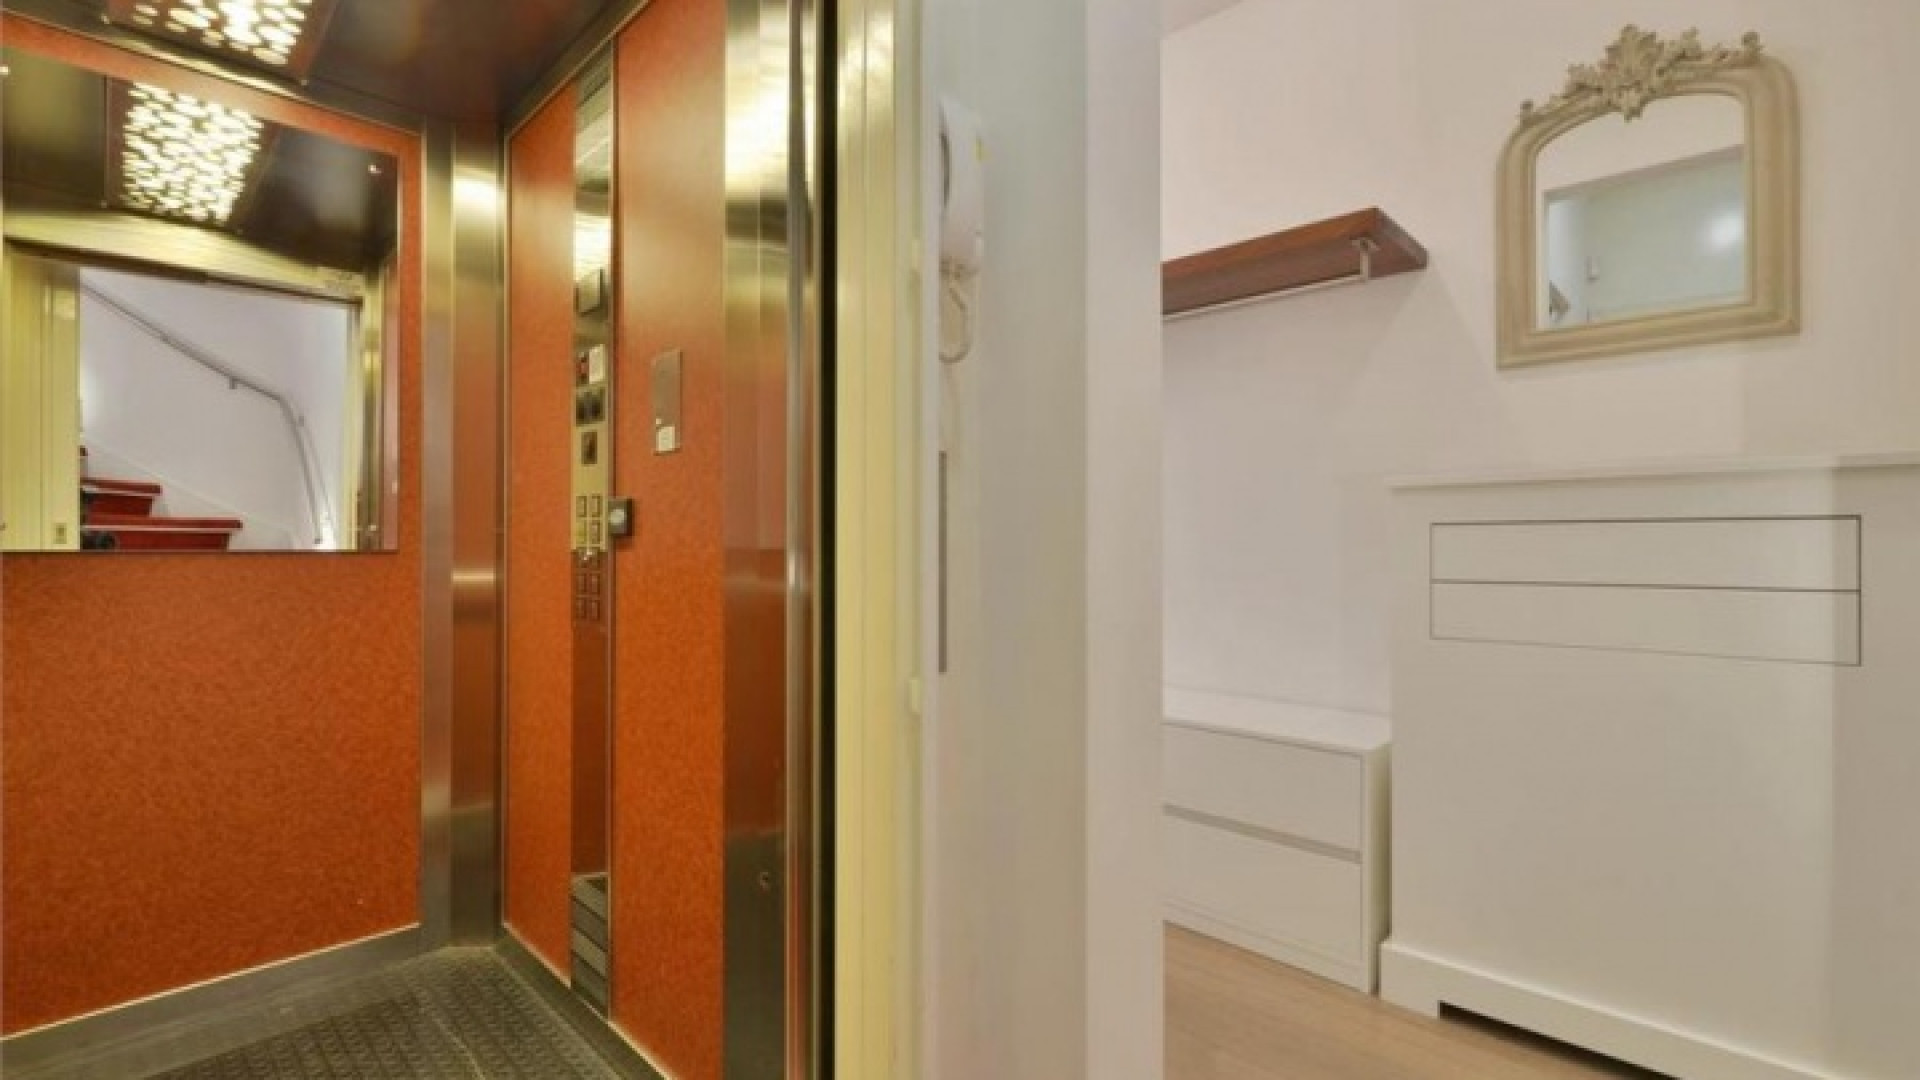 Frank Rijkaard zoekt huurder voor zijn luxe dubbele bovenhuis. Zie foto's